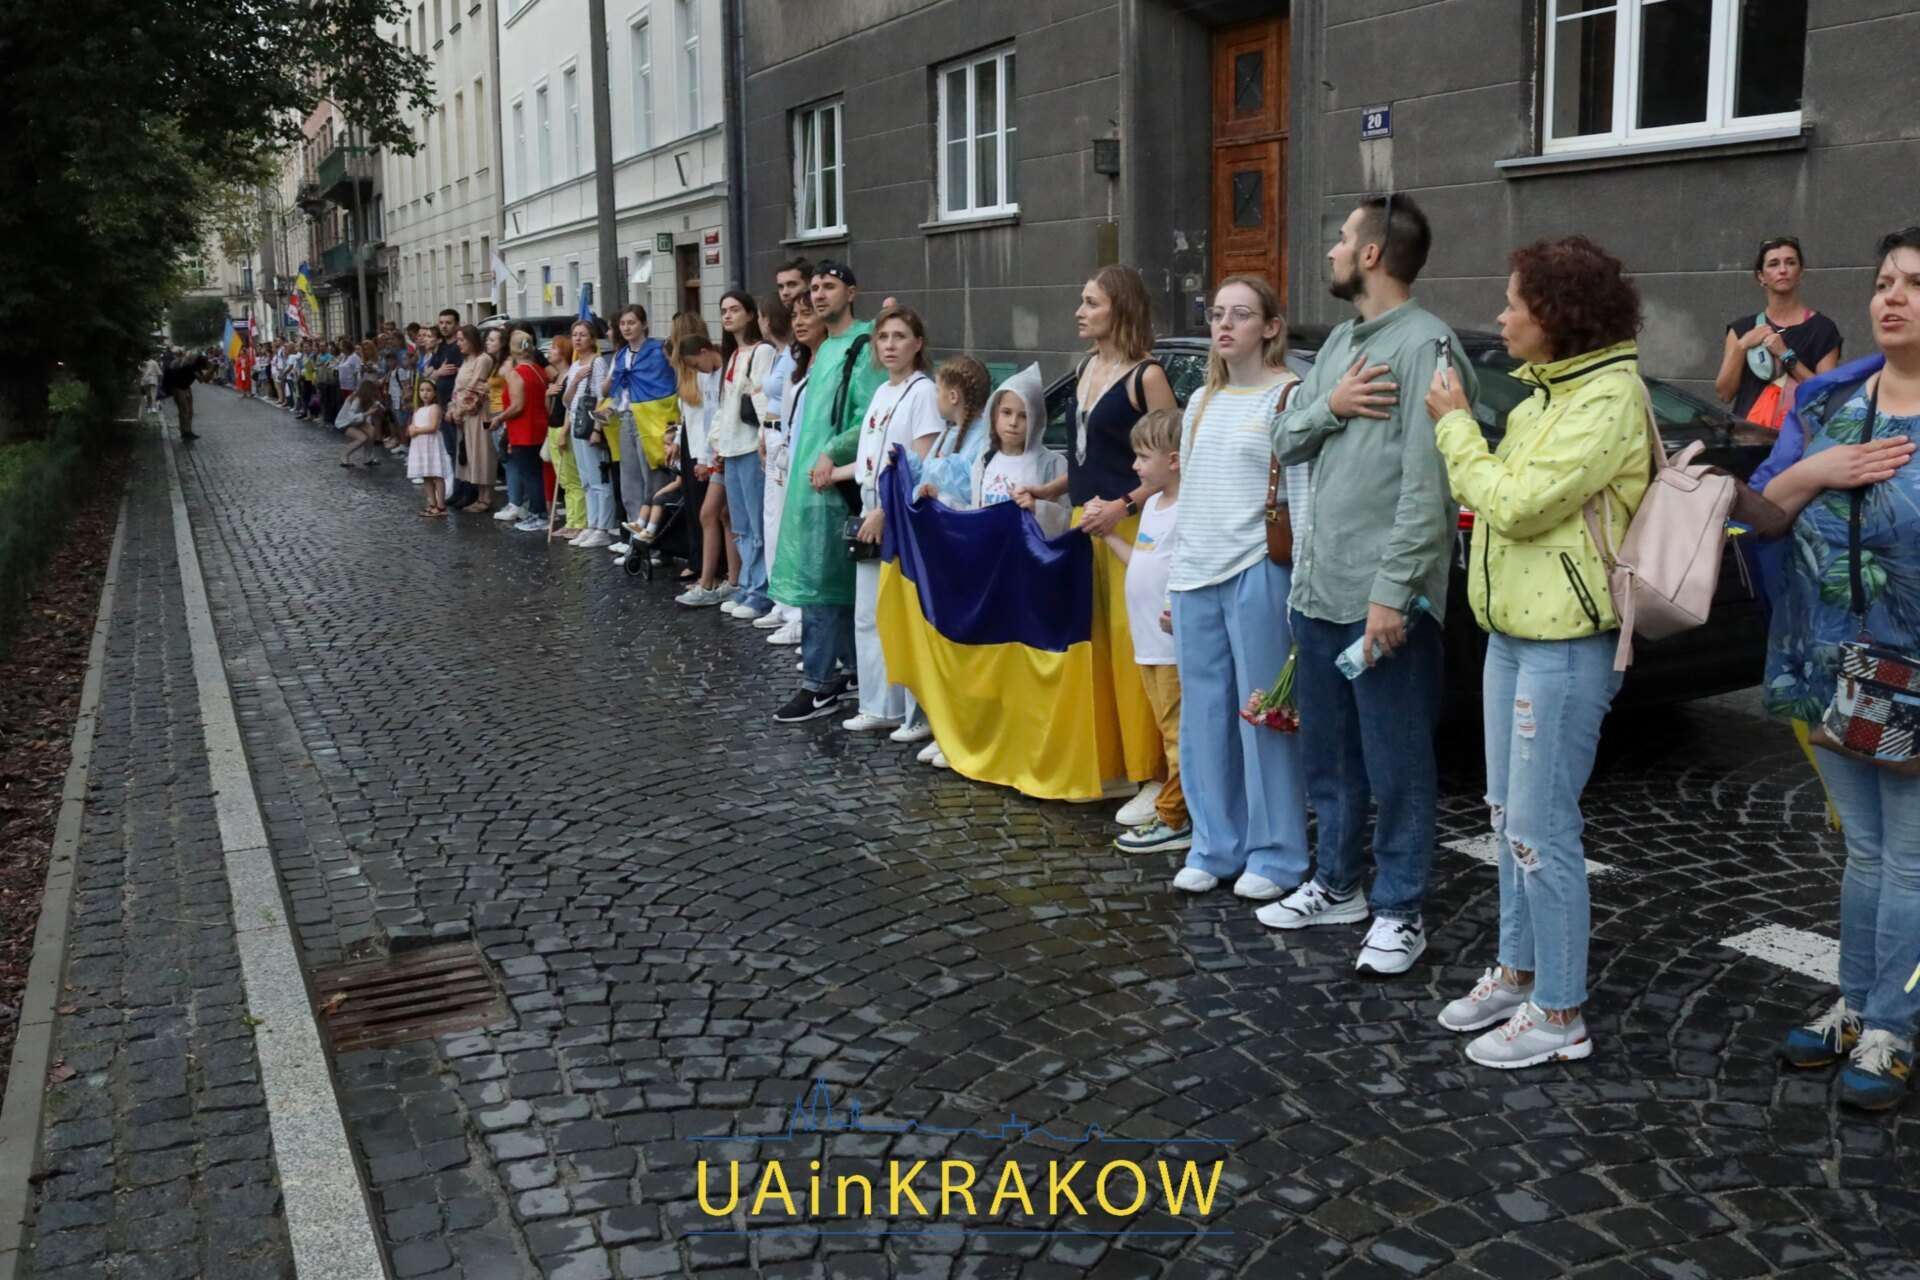 “Ми віримо в нашу перемогу, бо віримо в перемогу добра над злом”: як у Кракові проходив Марш Свободи на День Незалежності   E A UAinKrakow.pl